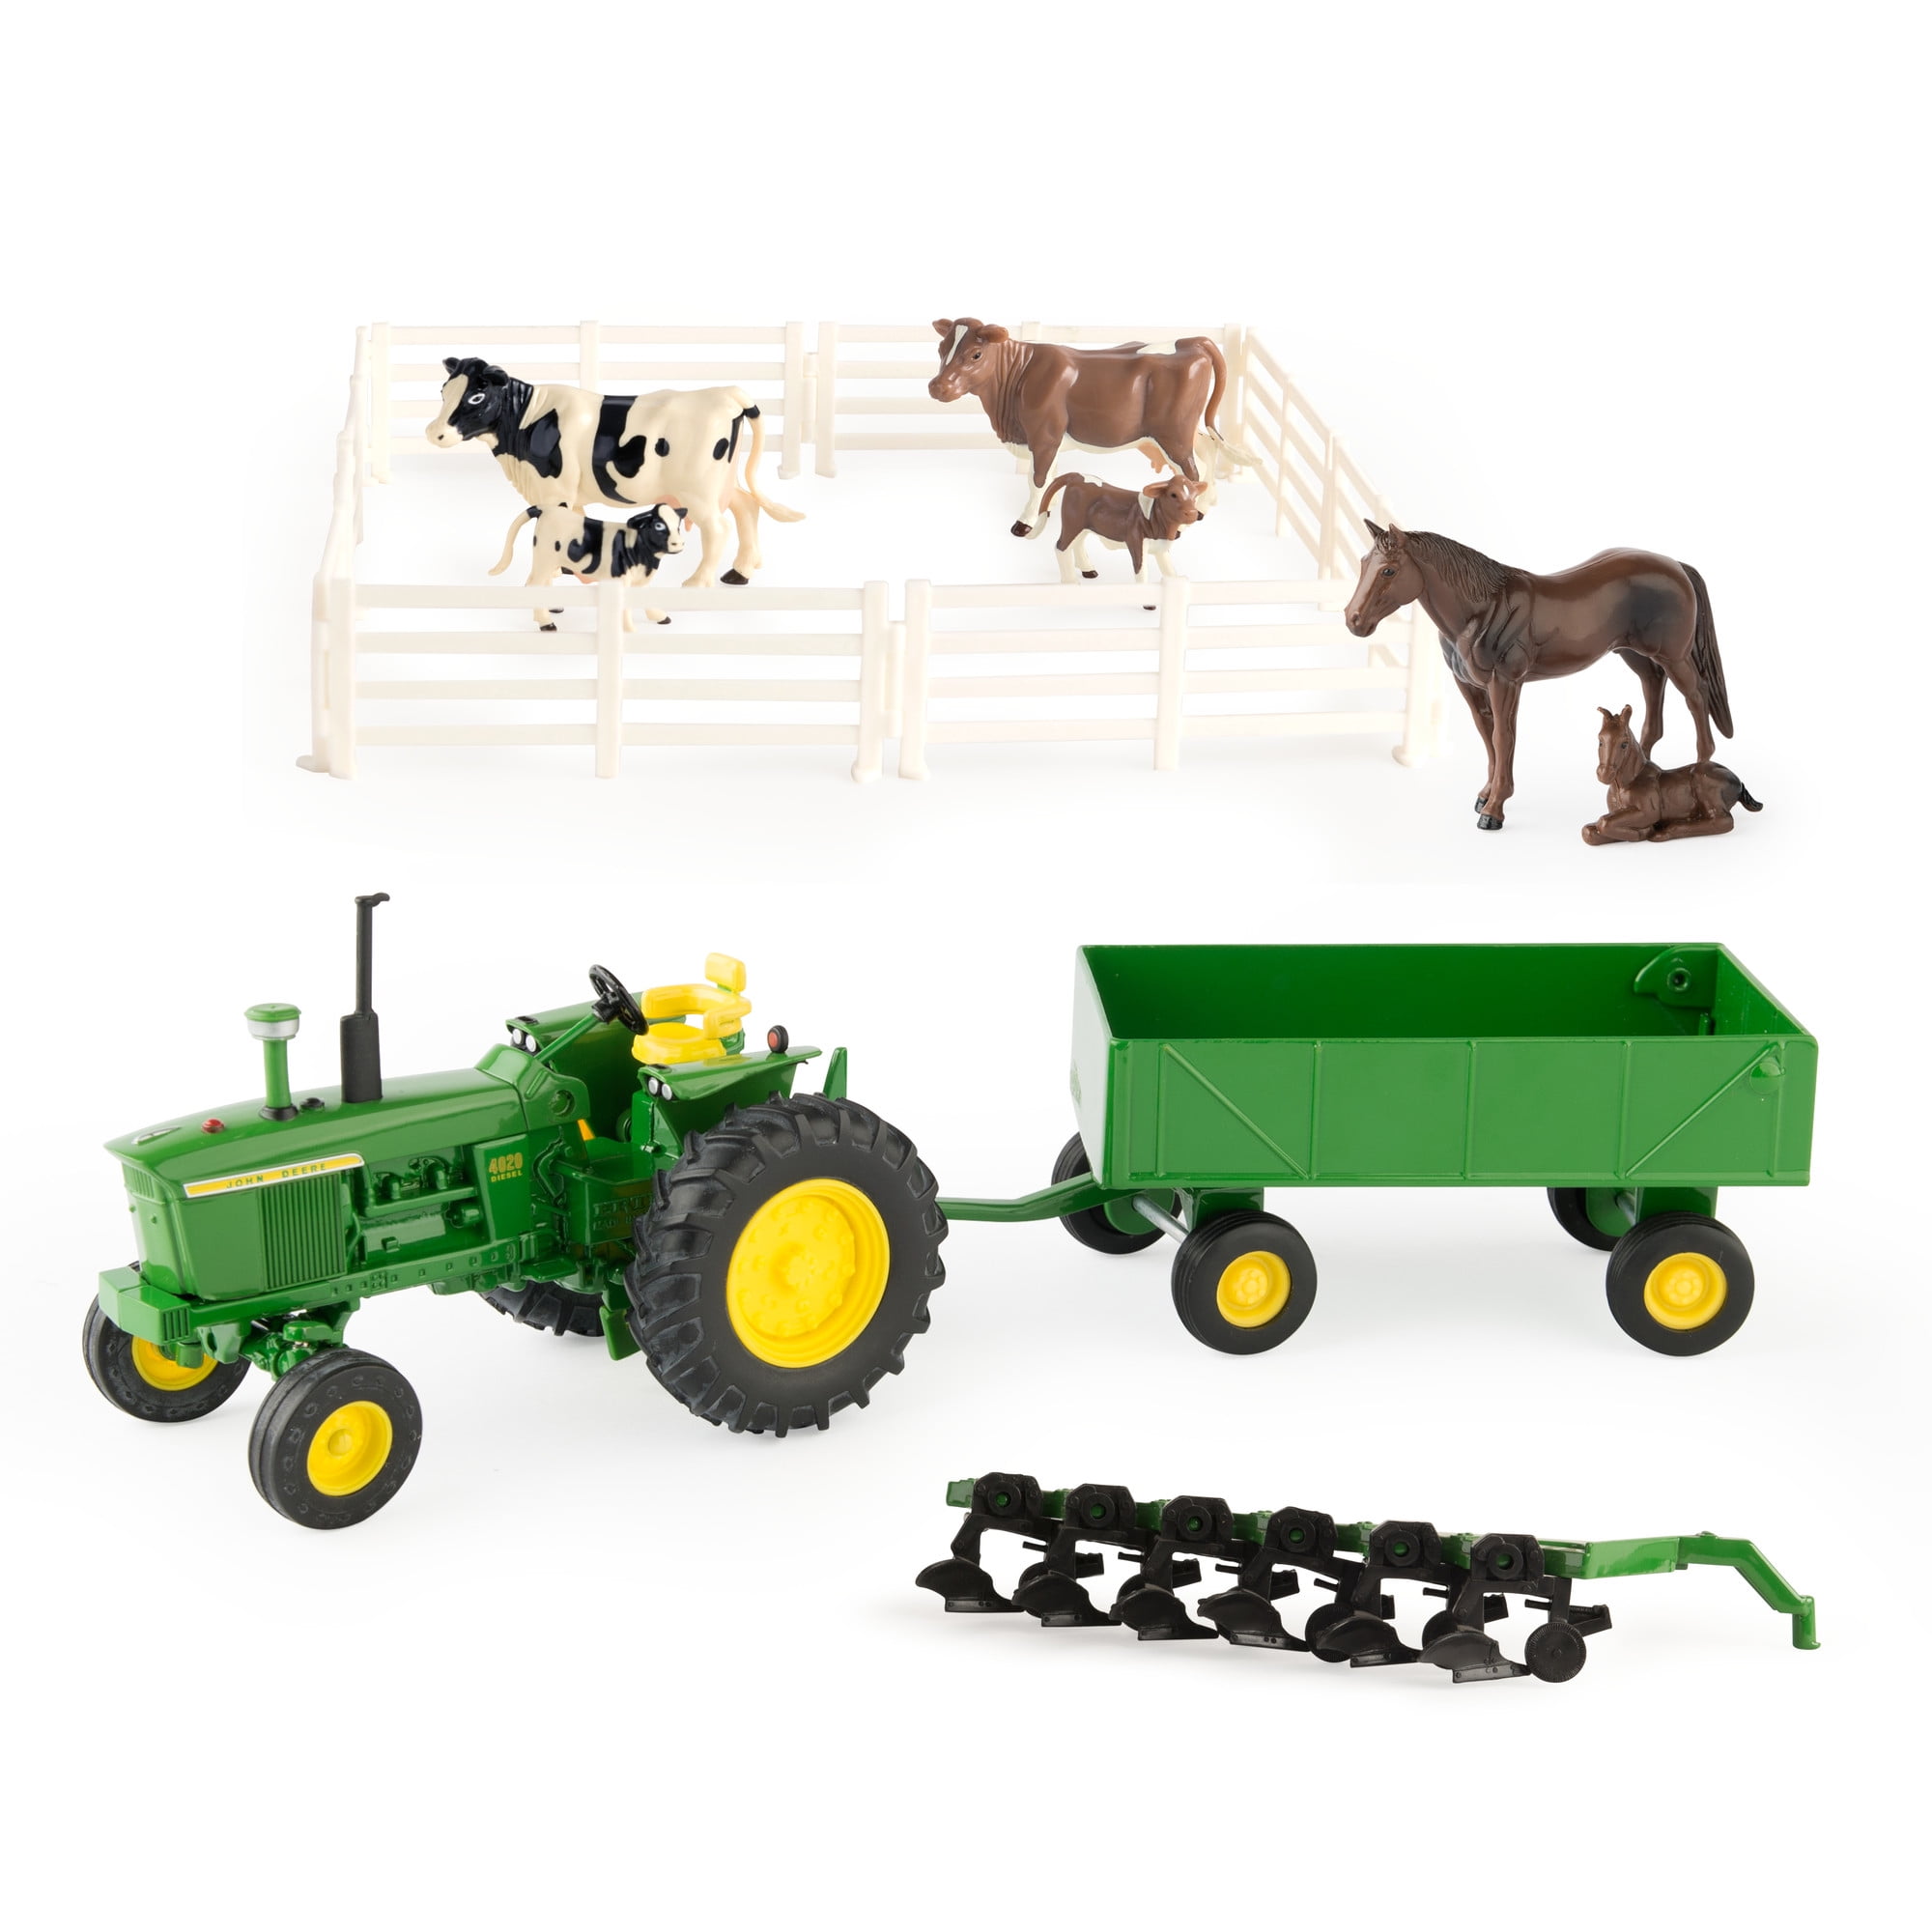 ERTL John Deere Farm Toy Playset 